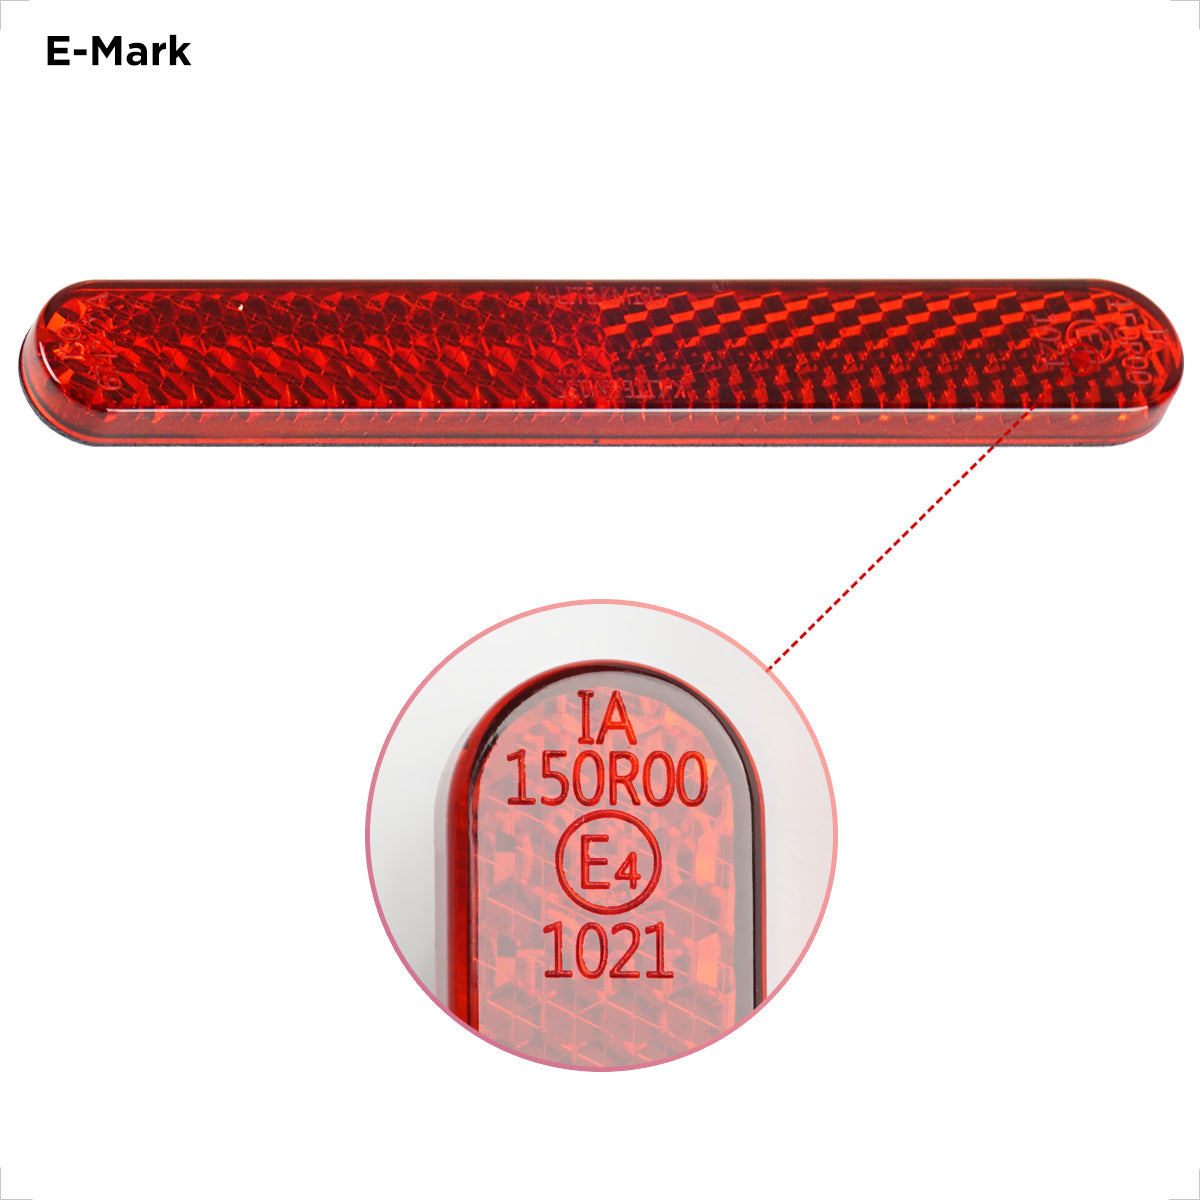 Reflektor rechteckig rot Universal (M5) - Reflektoren -   - Mofa, Roller, Ersatzteile und Zubehör